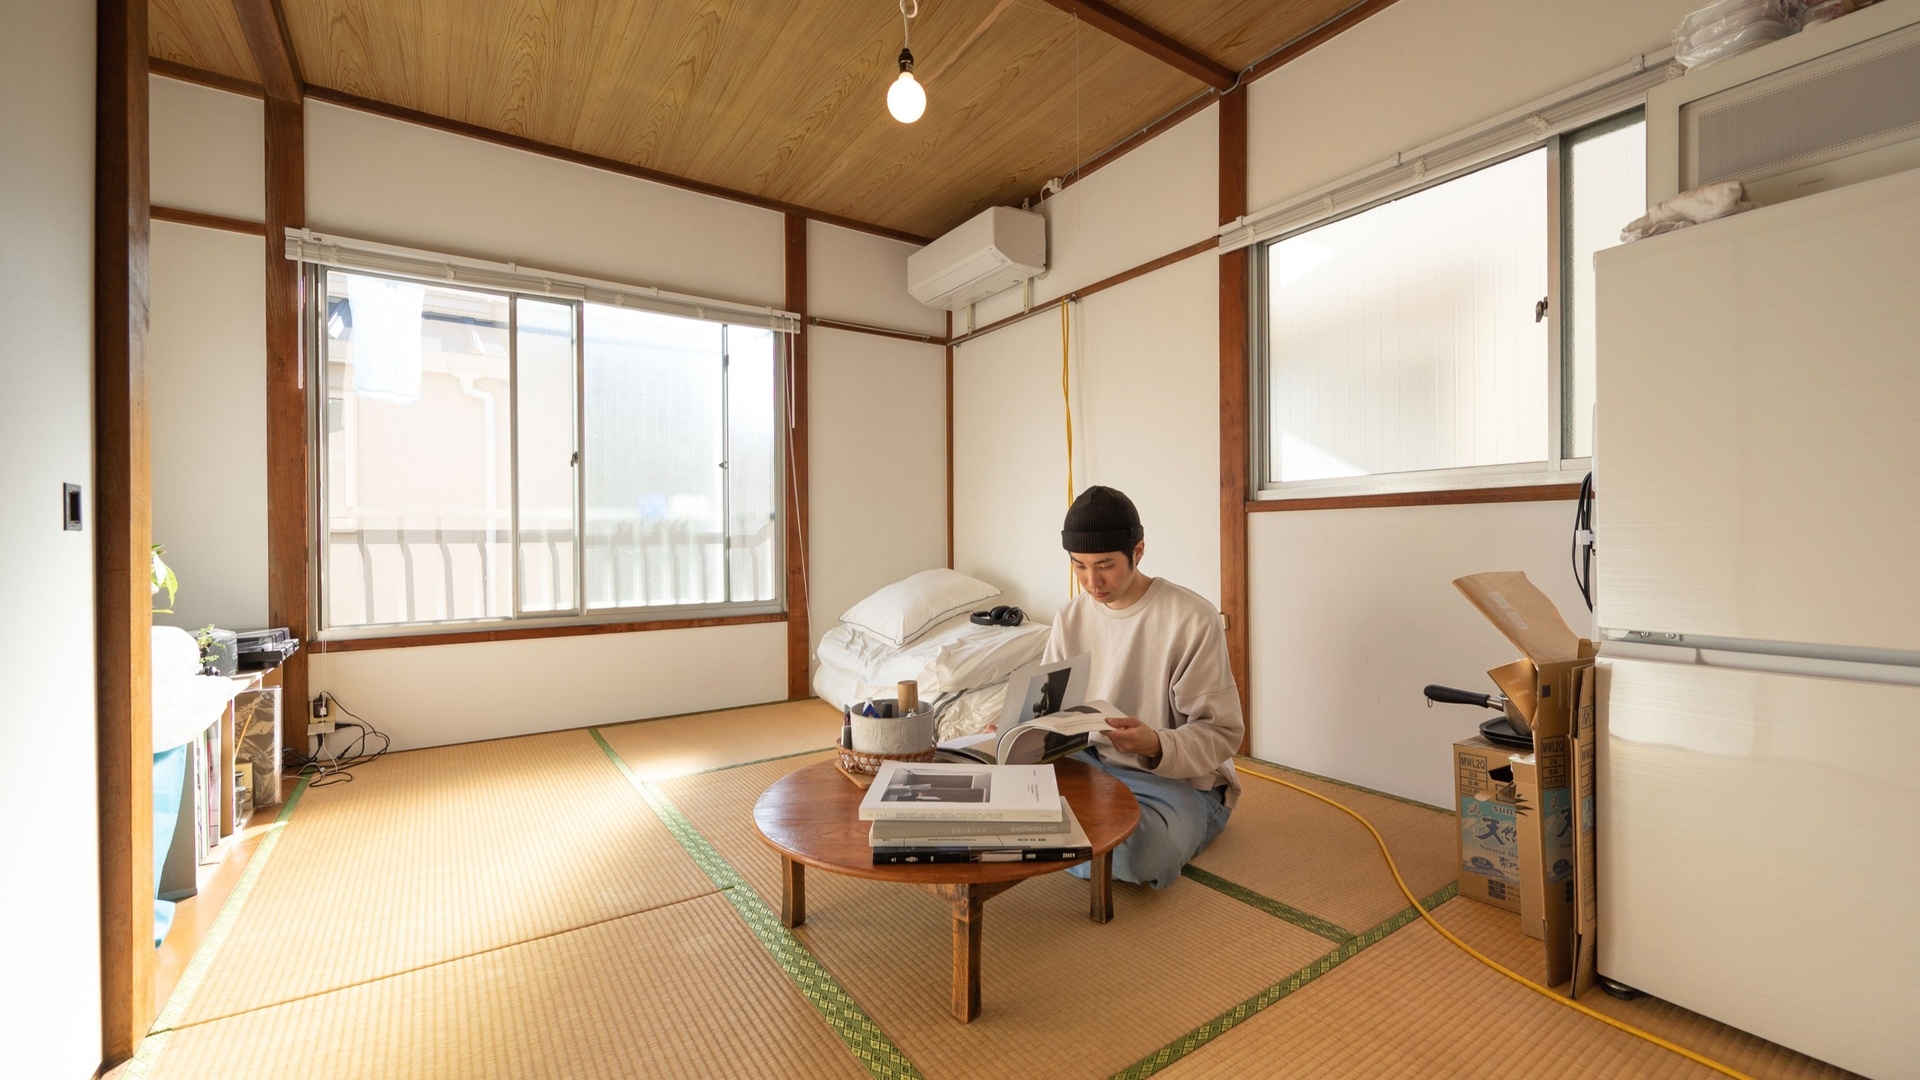 Căn hộ 14 m2, không phòng tắm phơi bày nỗi khổ ở Nhật Bản